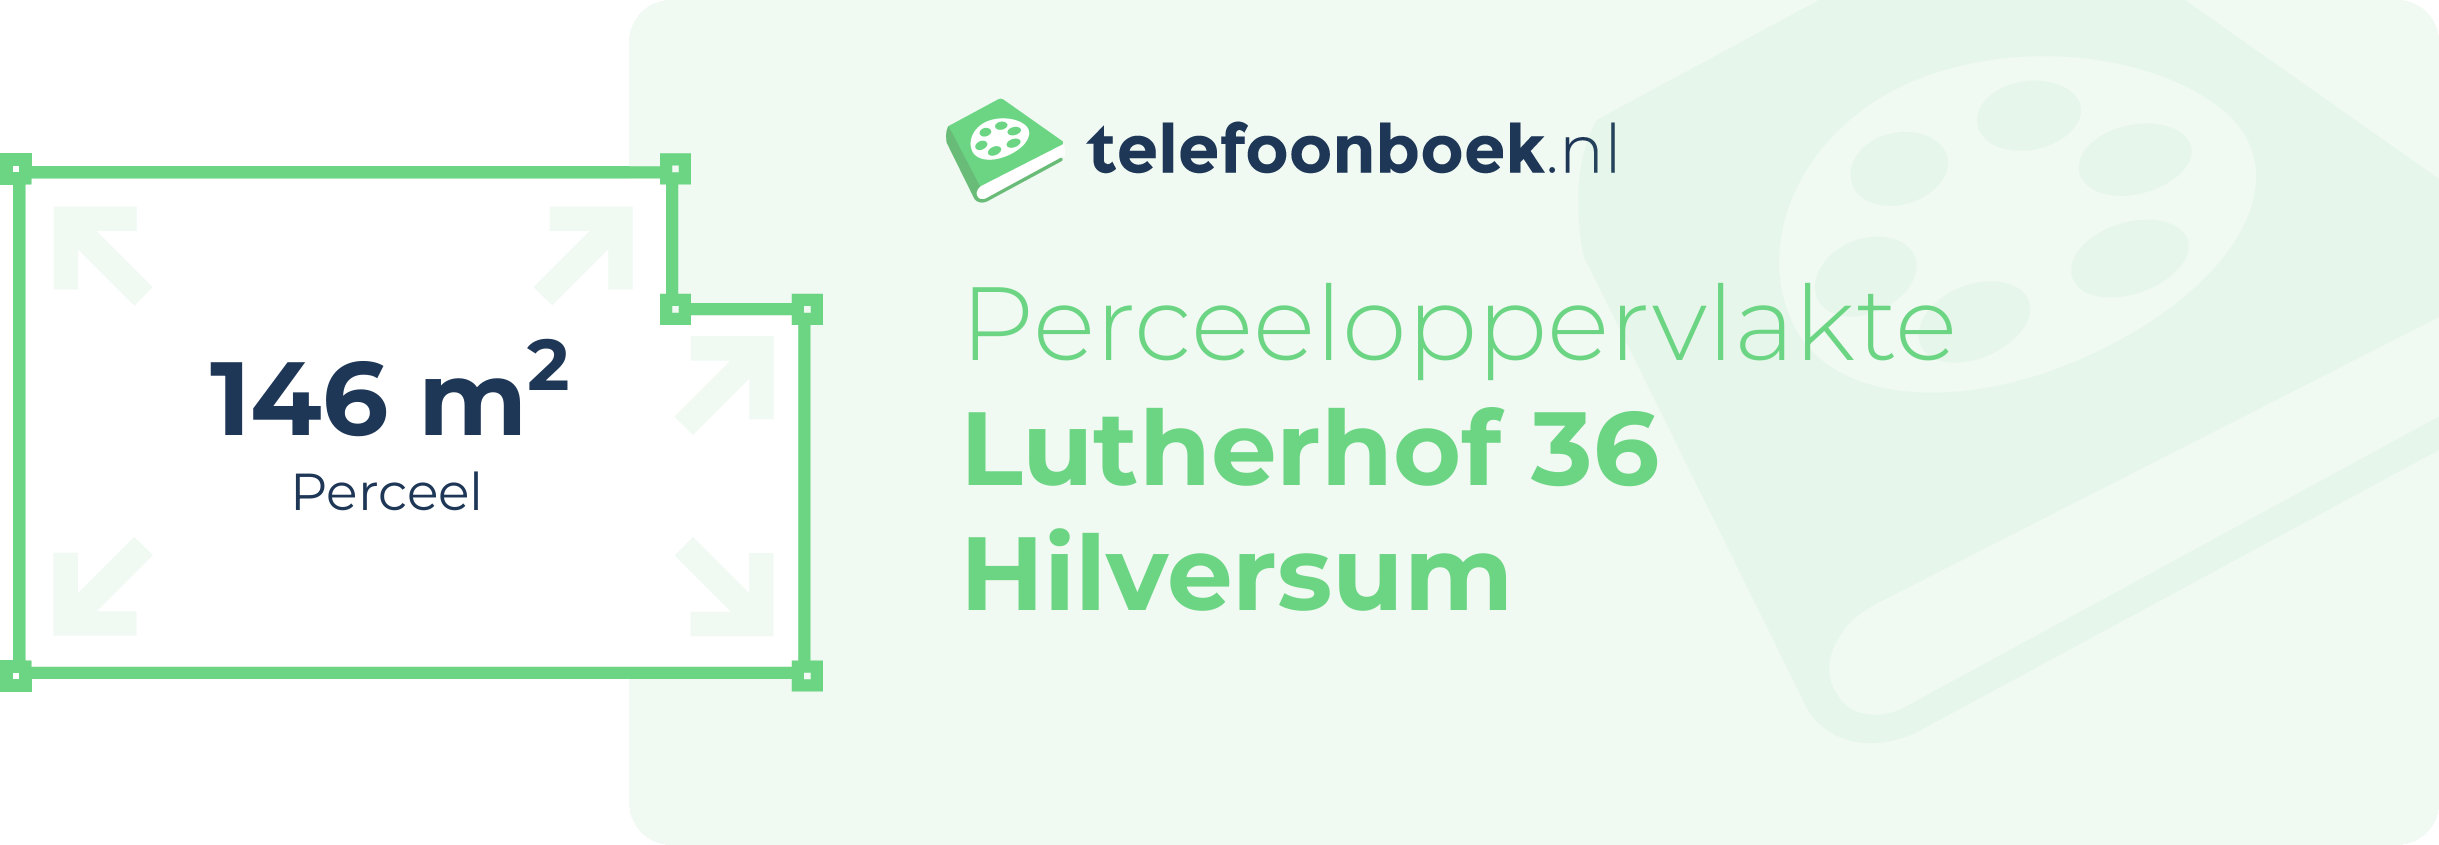 Perceeloppervlakte Lutherhof 36 Hilversum